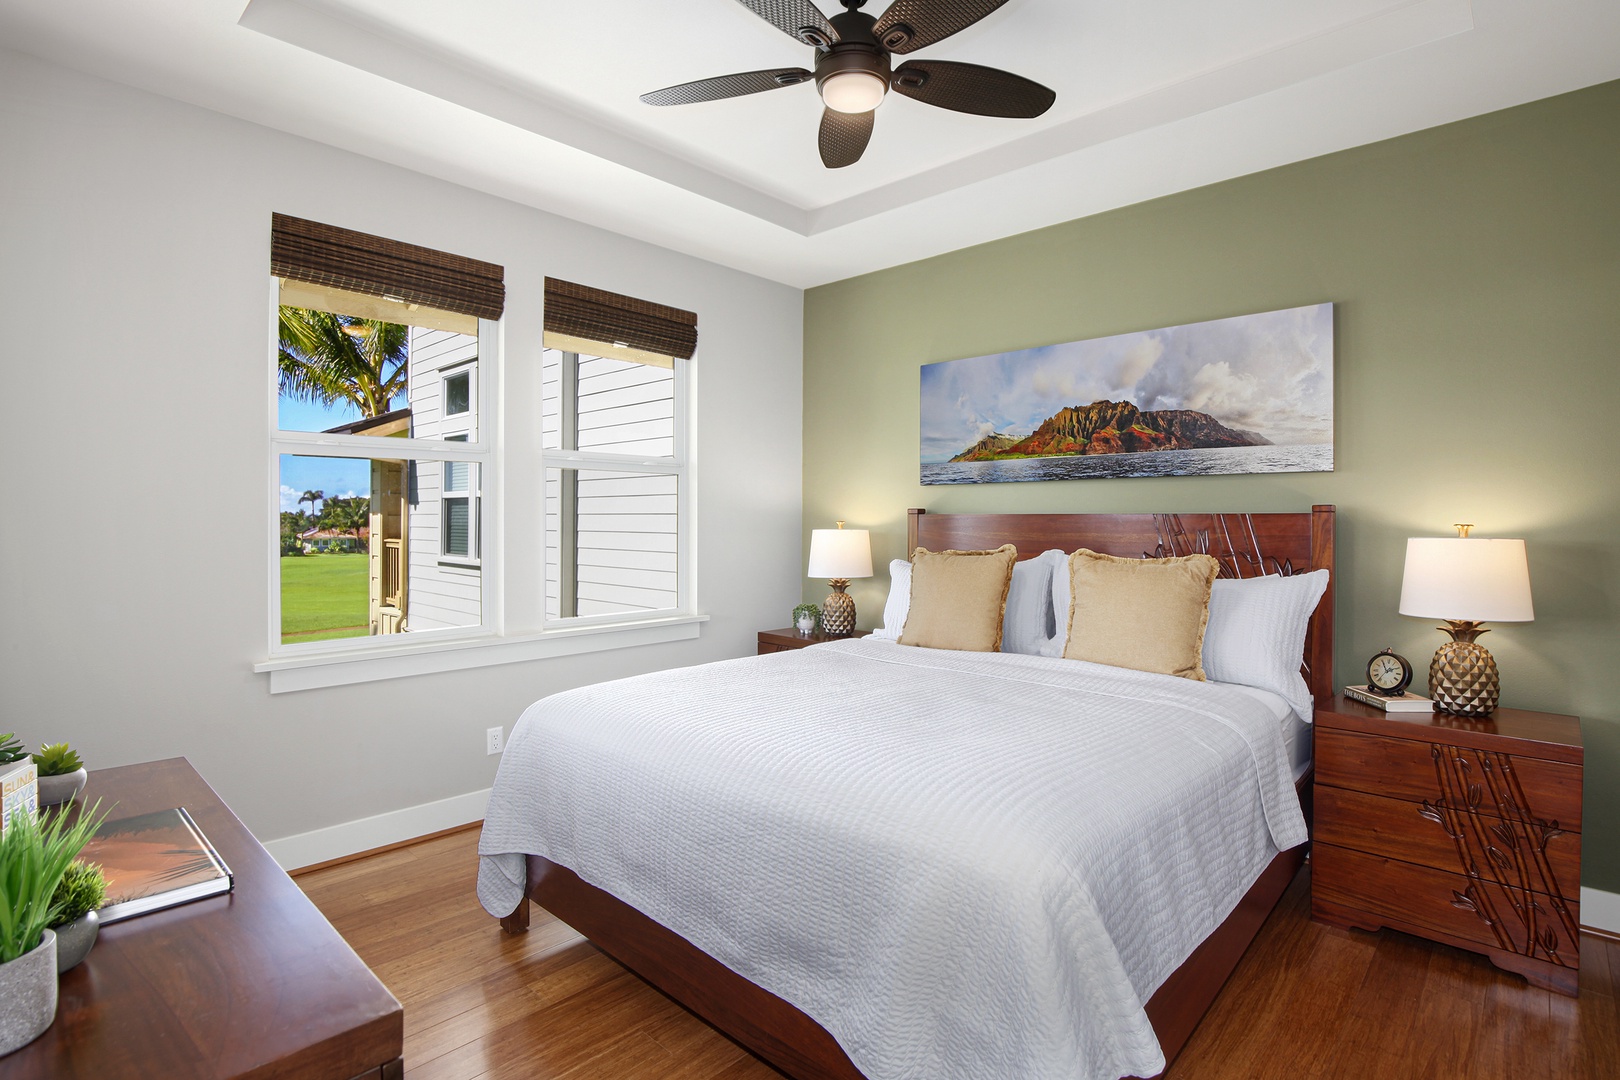 Koloa Vacation Rentals, Pili Mai 8C - Master bedroom